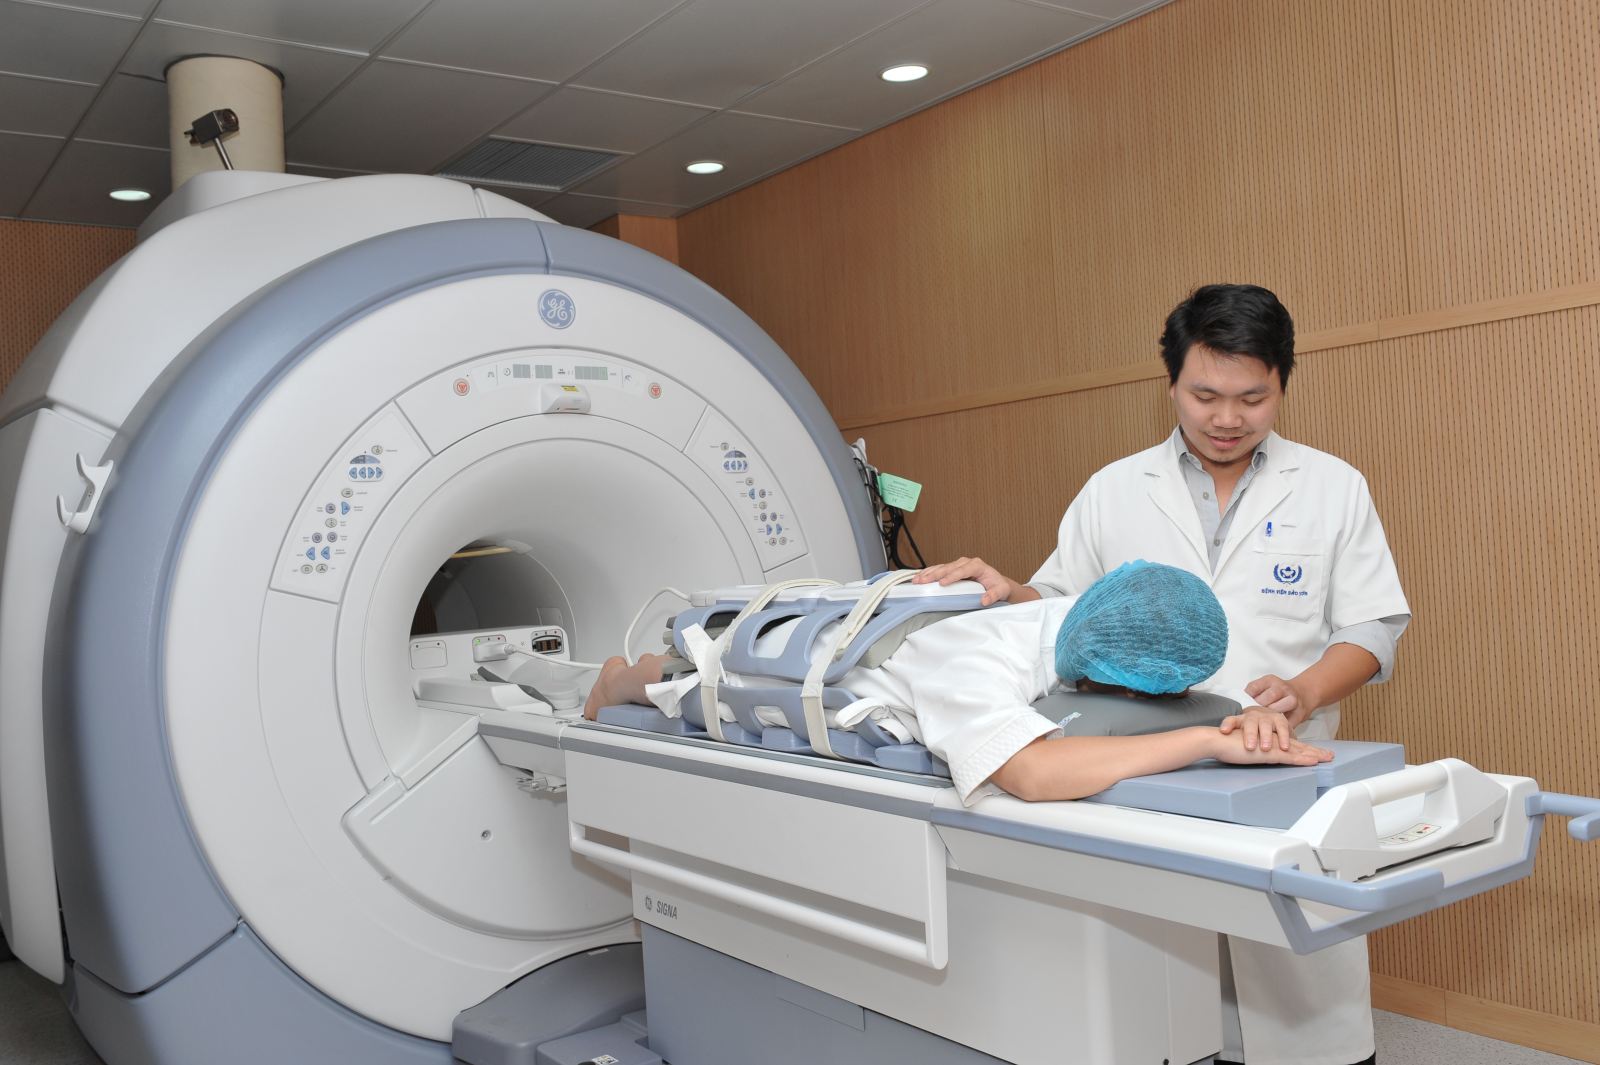 Thiết bị FUS-MRI ứng dụng trong điều trị u xơ tử cung đã được triển khai thành công tại Bệnh viện Đa khoa Bảo Sơn 2.